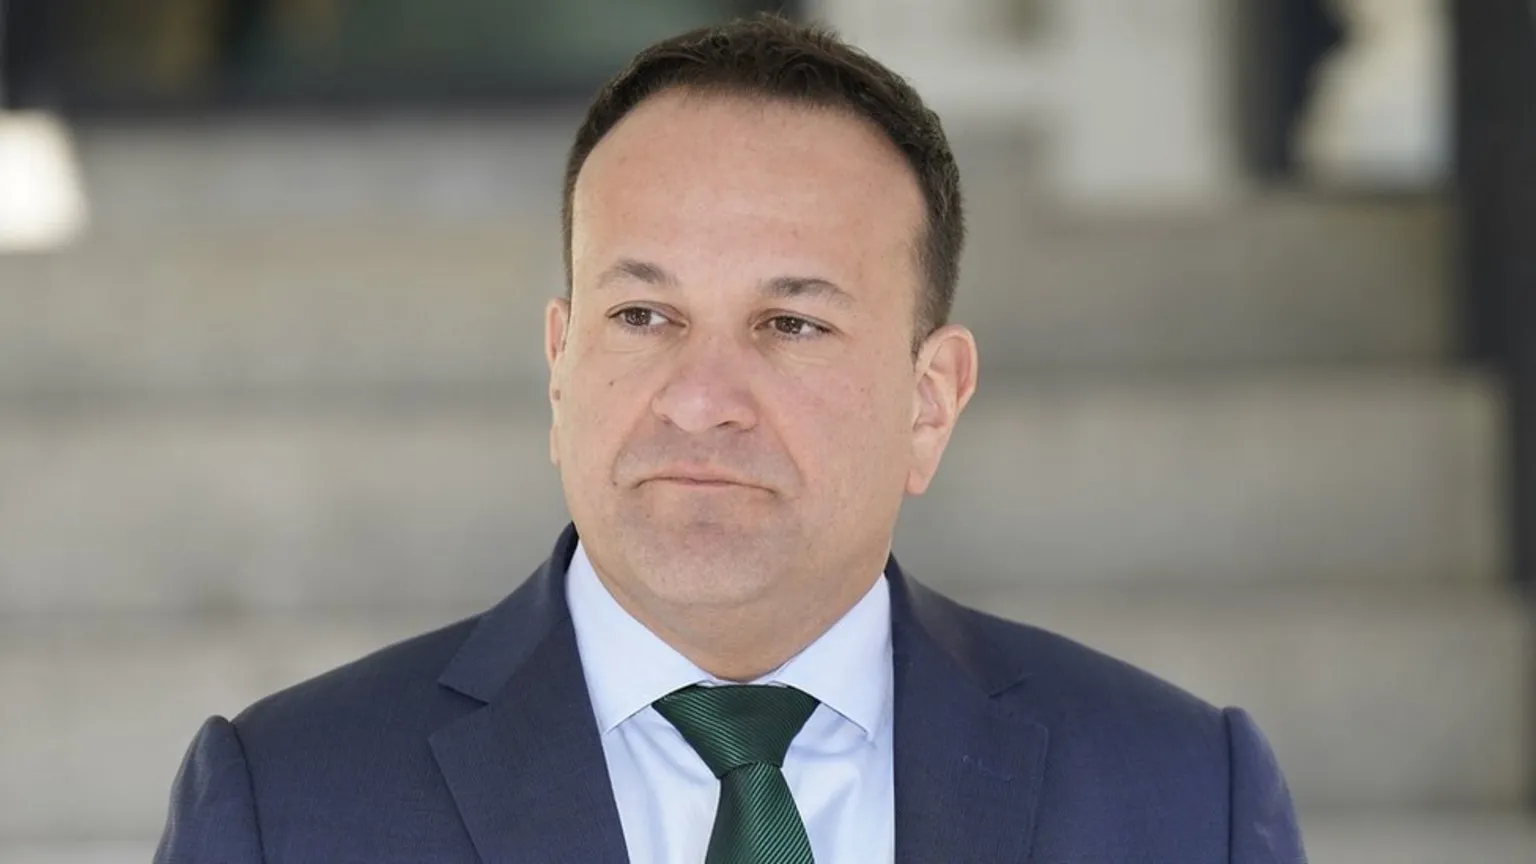 ‘Nuk jam i mirë për të udhëhequr vendin’/ Kryeministri i Irlandës jep dorëheqjen